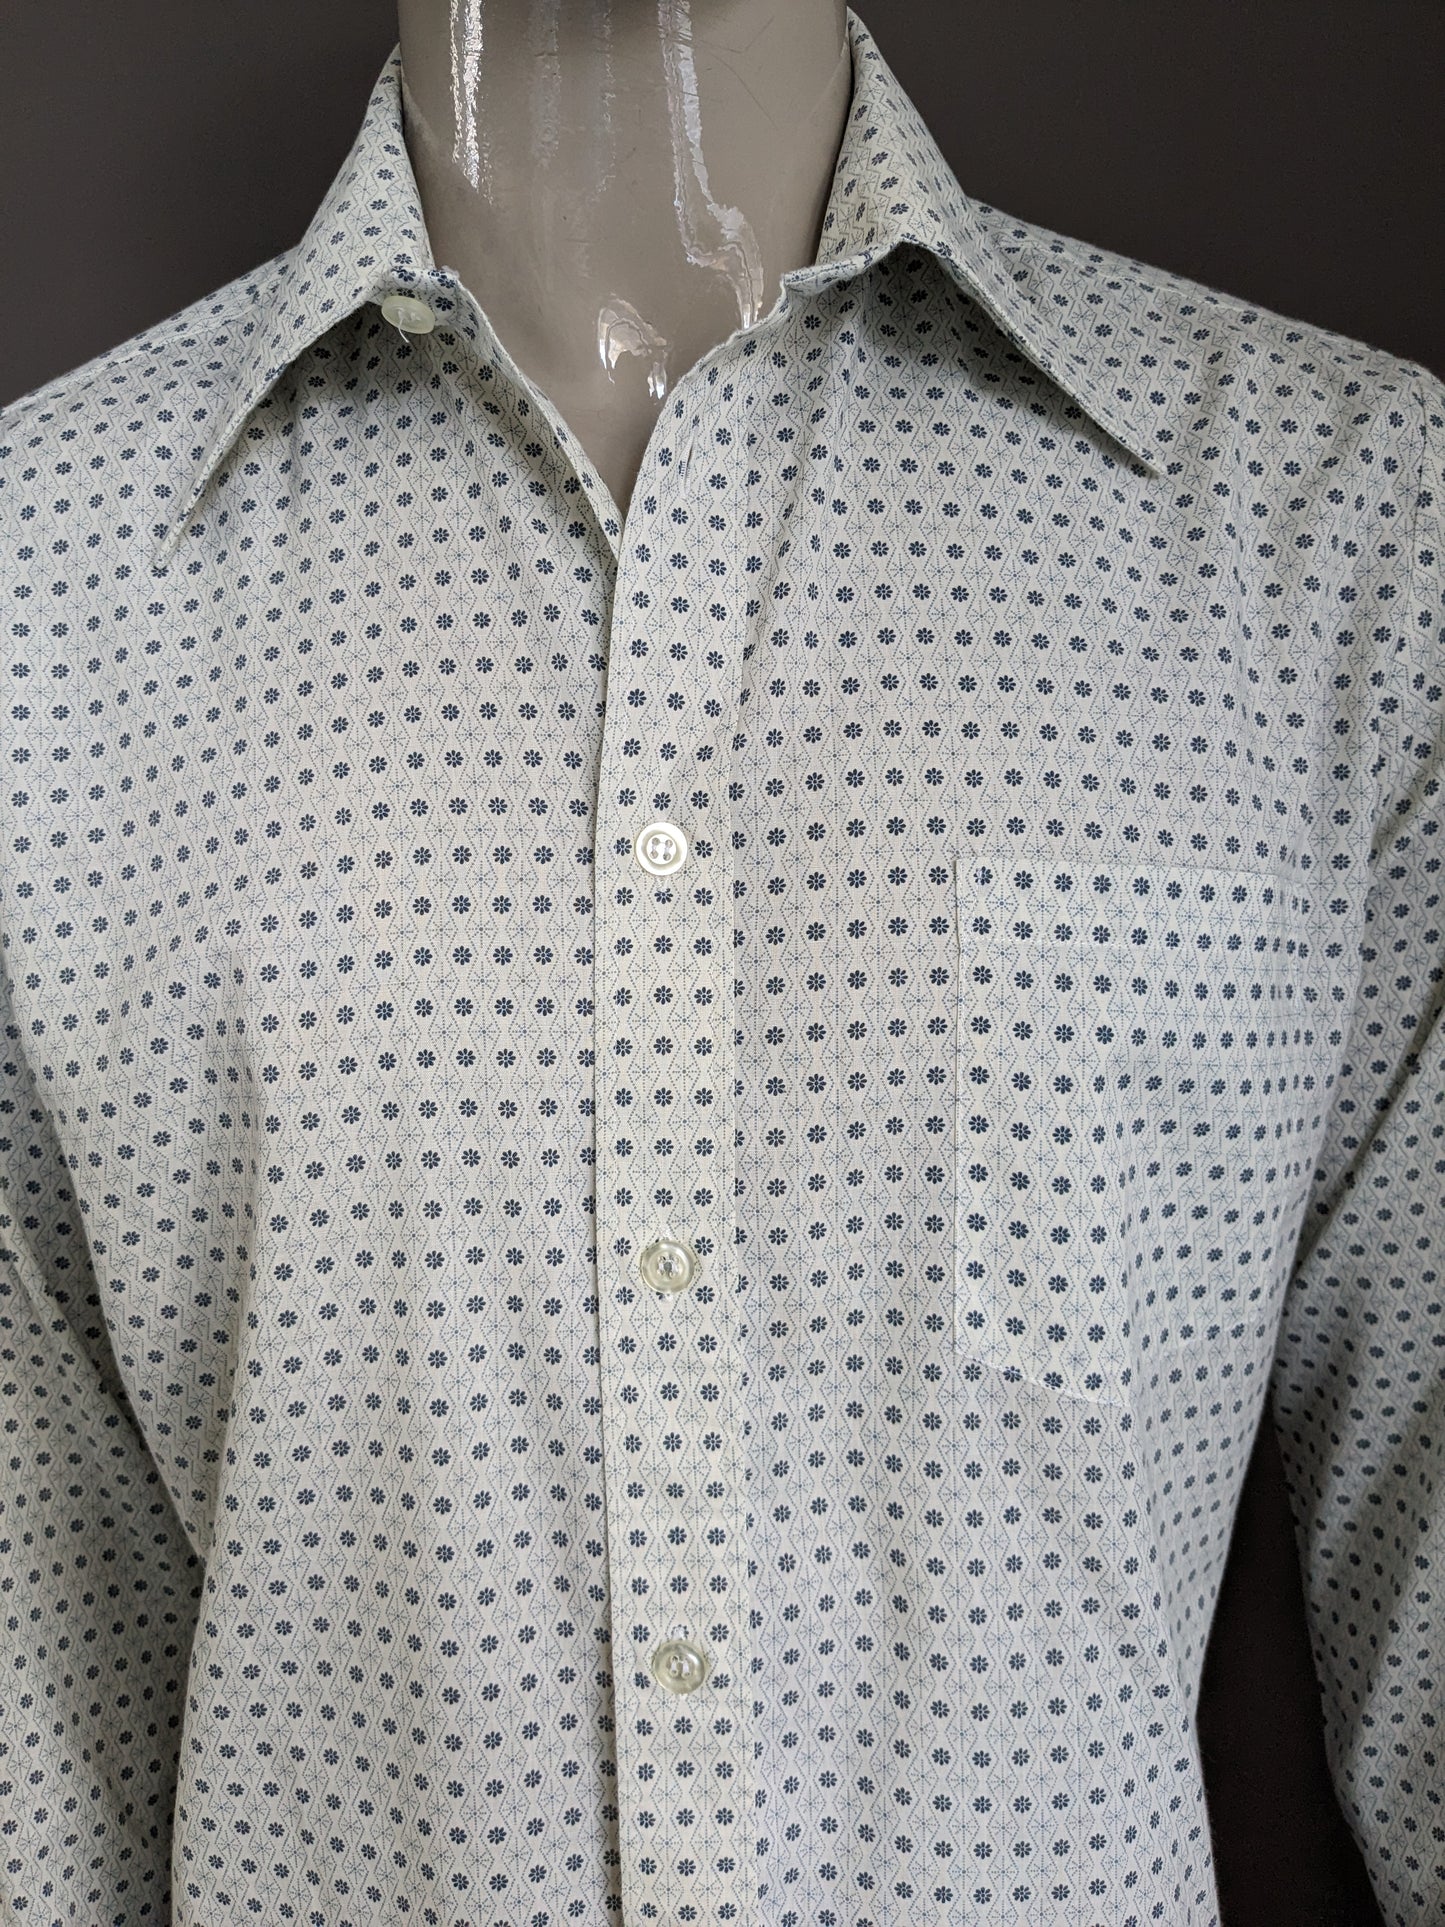 Vintage Fabio 70er Hemd mit Punktkragen. Beige grau Blumen. Größe xl.